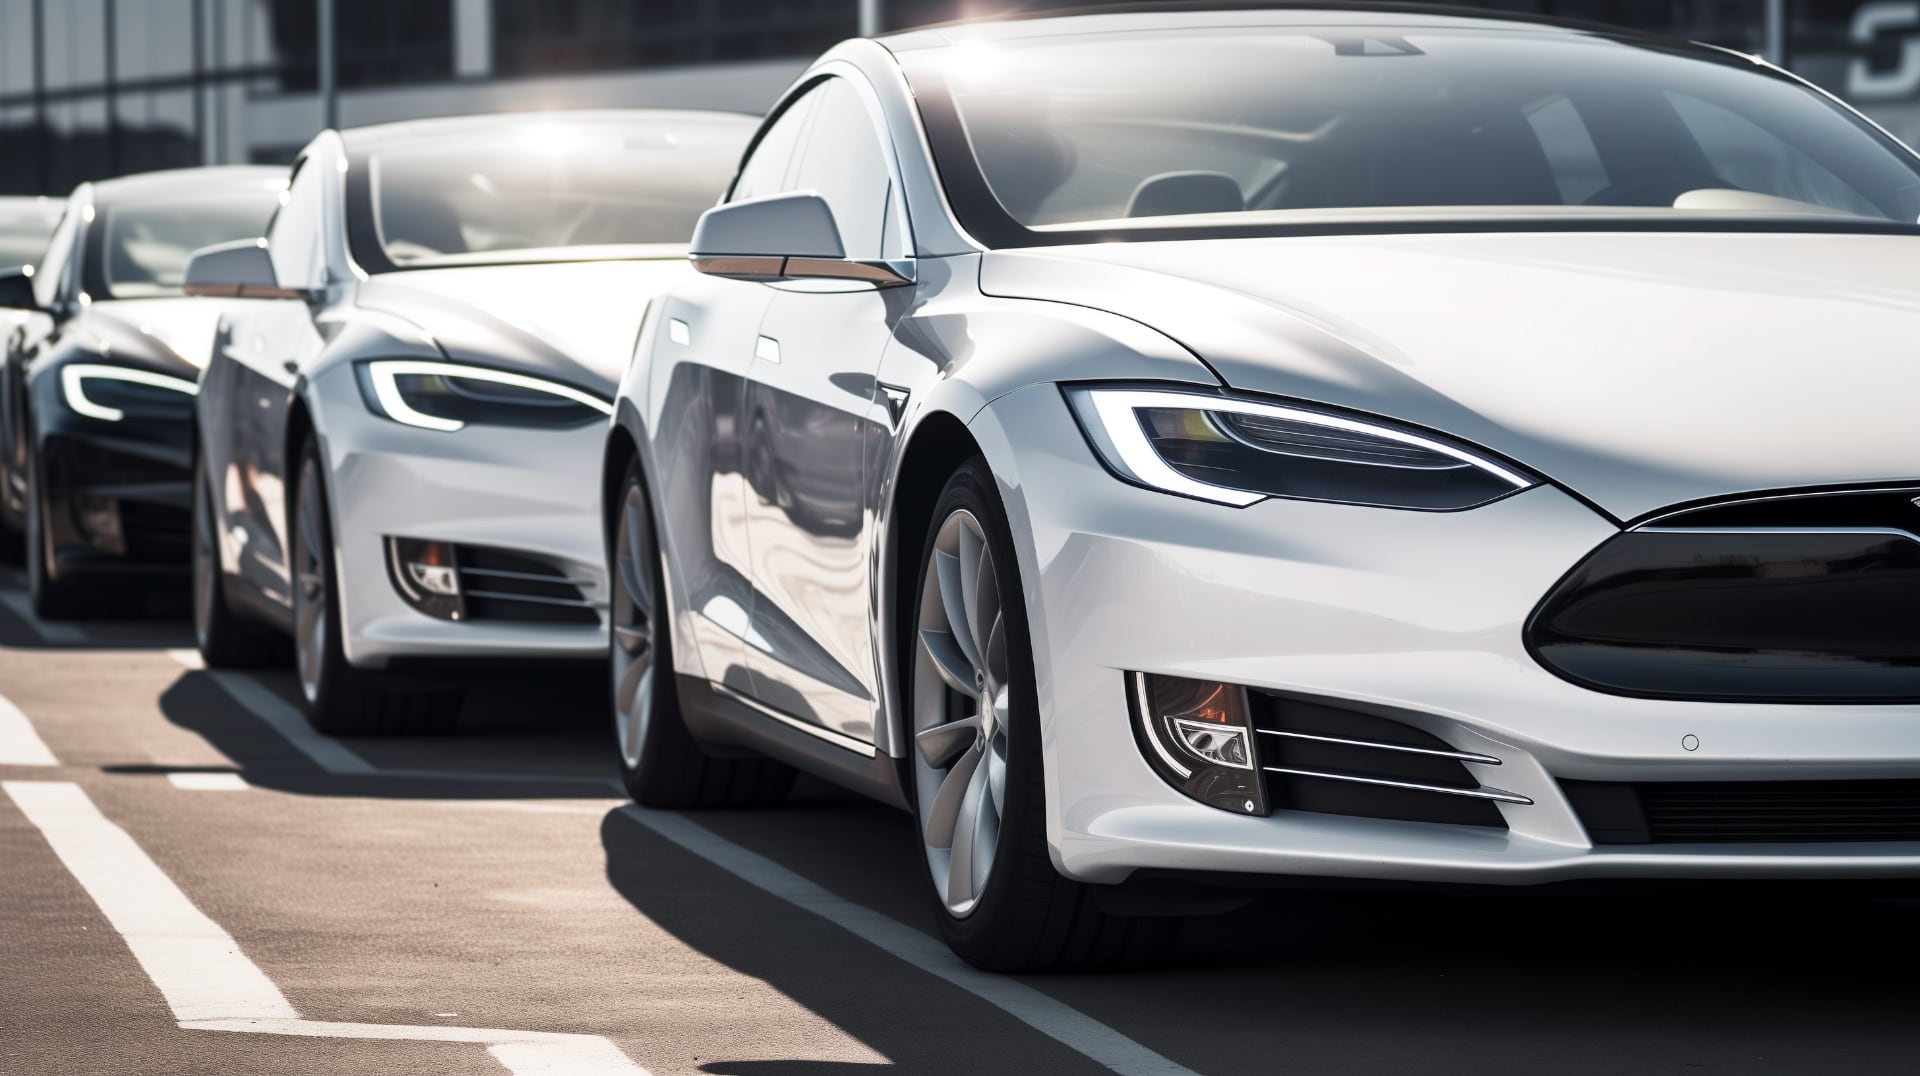 Tesla tilbagekalder 120.000 biler i USA på grund af sikkerhedsproblemer med døre